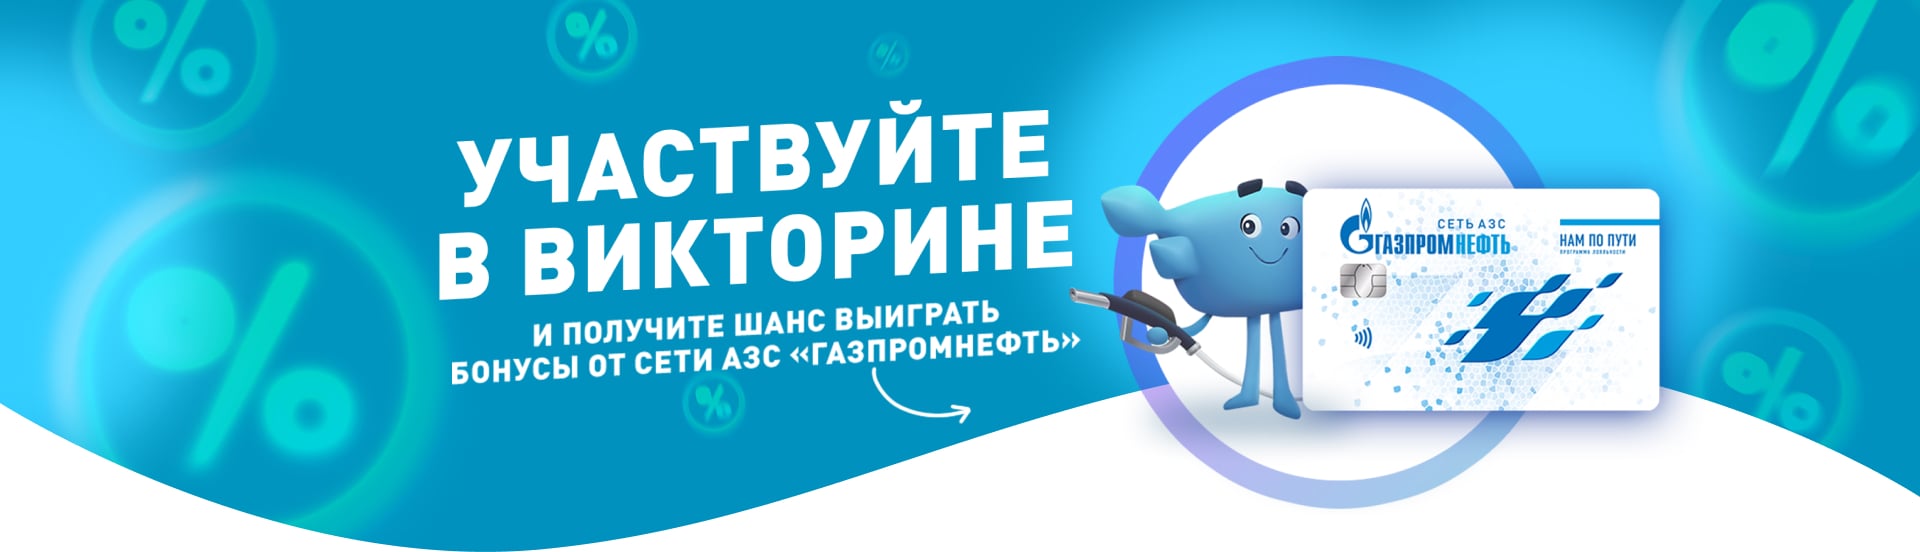 Викторина на Авторадио совместно с "Газпромнефть". Получите шанс выиграть бонусы от сети АЗС "Газпромнефть"